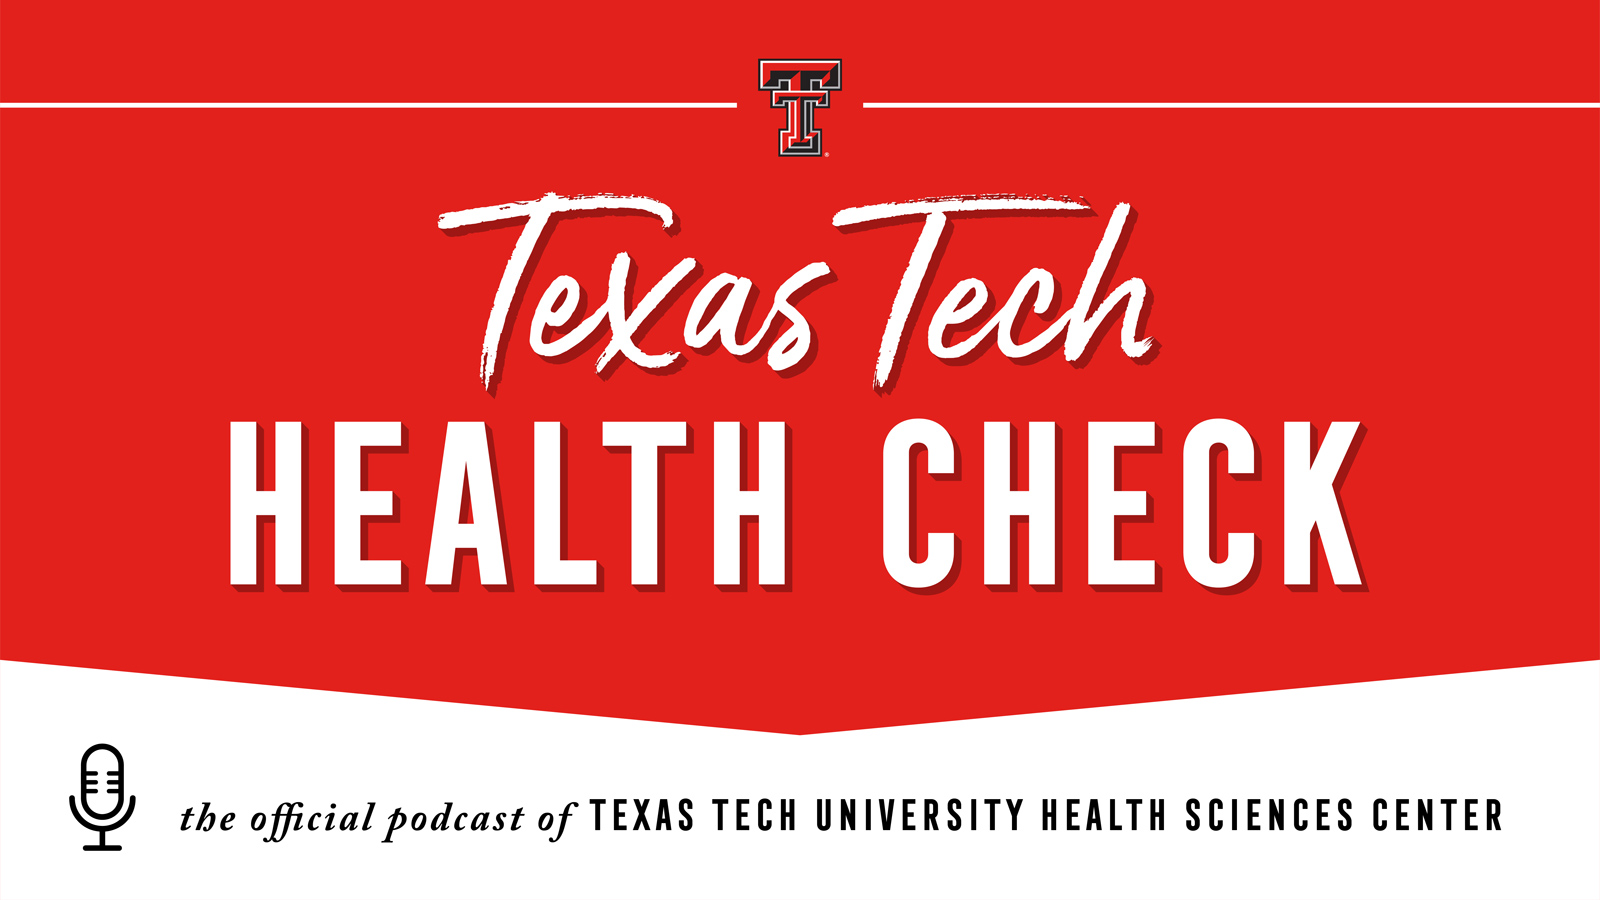 Texas Tech Health Check logo